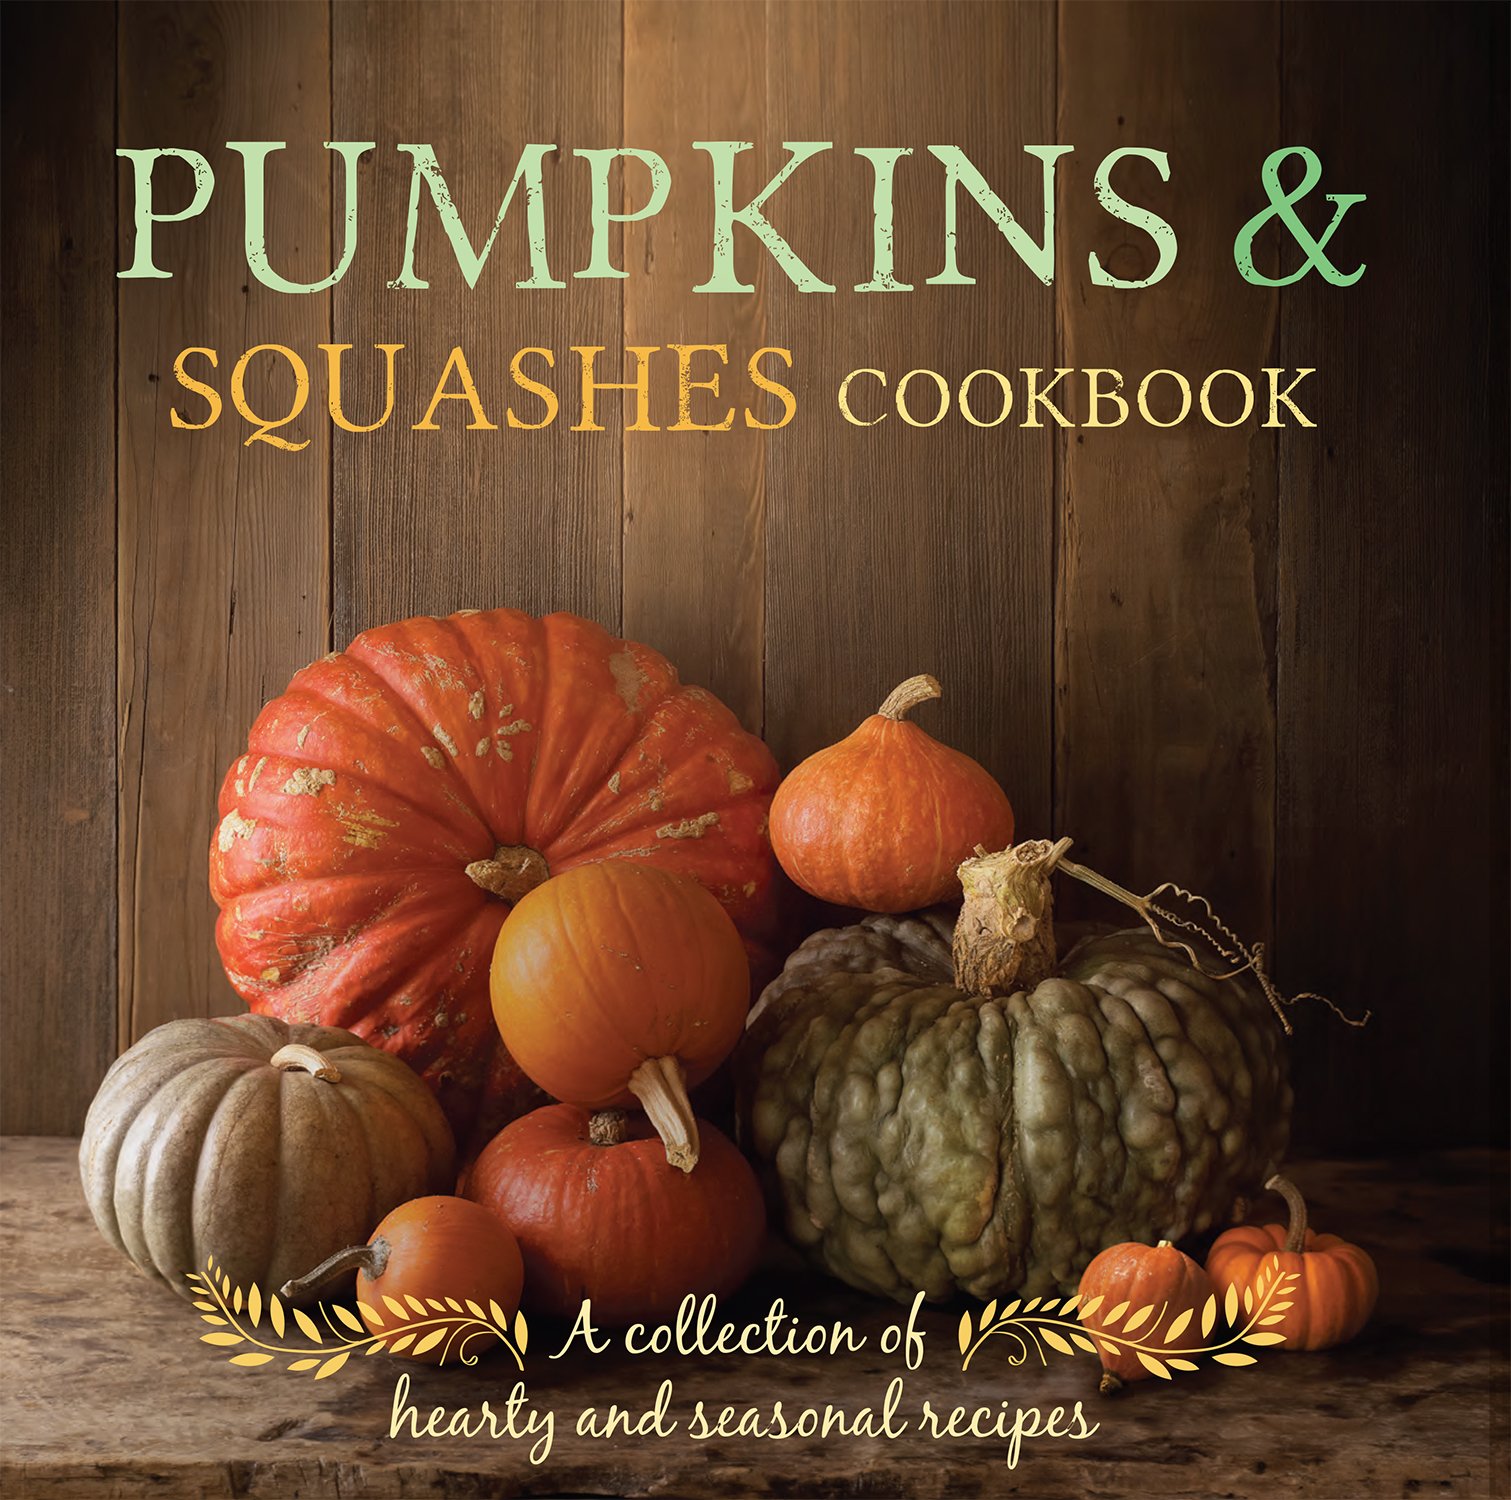 Pumpkins & Squashes Cookbook: Parragon Books, Love Food Editors ...